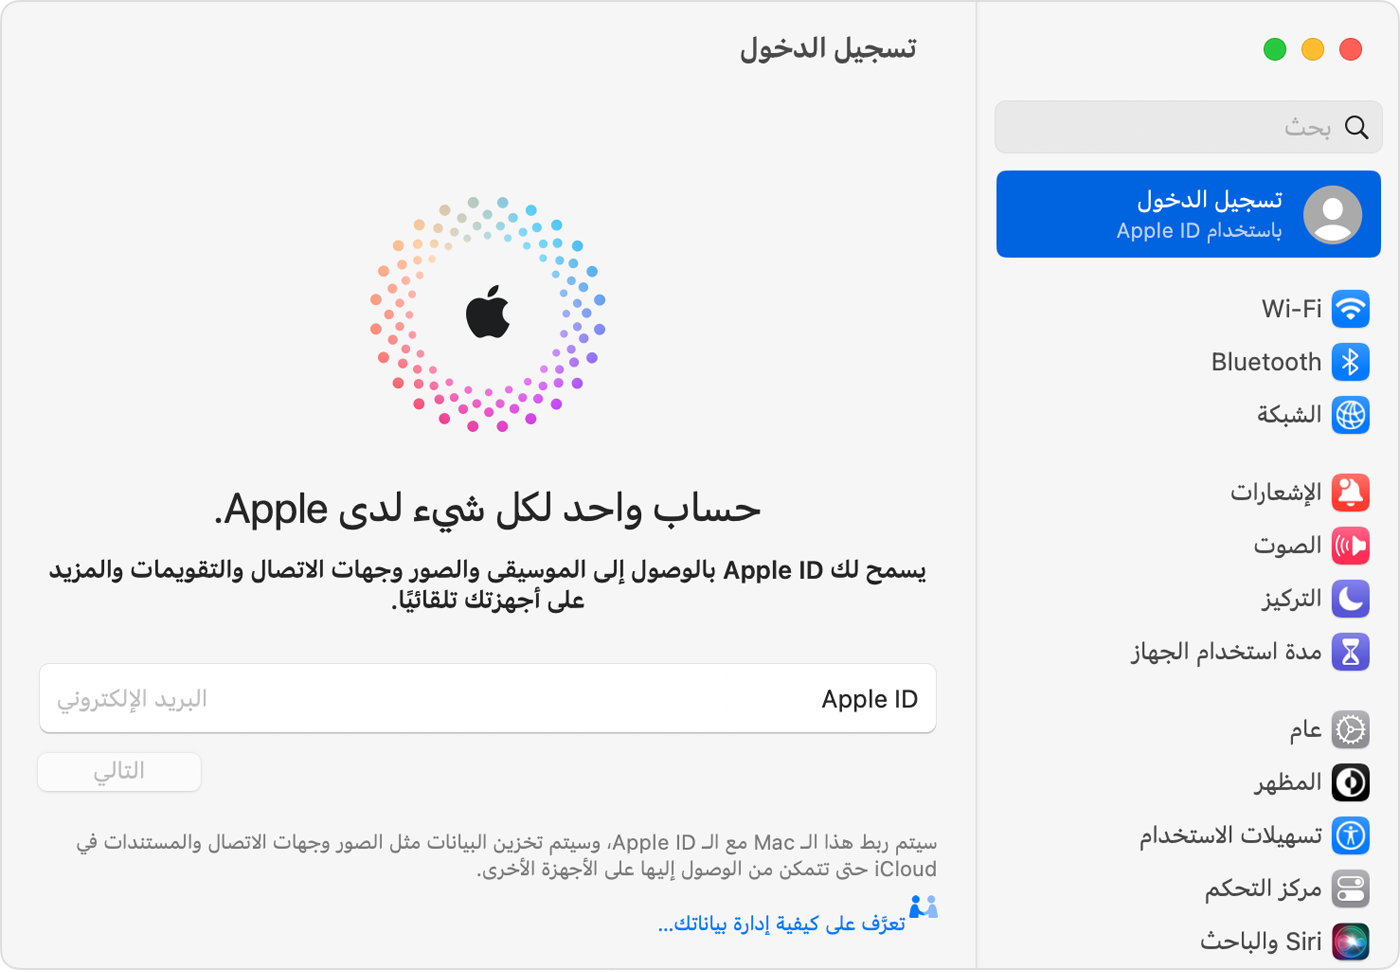 على جهاز Mac، قم بتسجيل الدخول إلى Apple ID في 